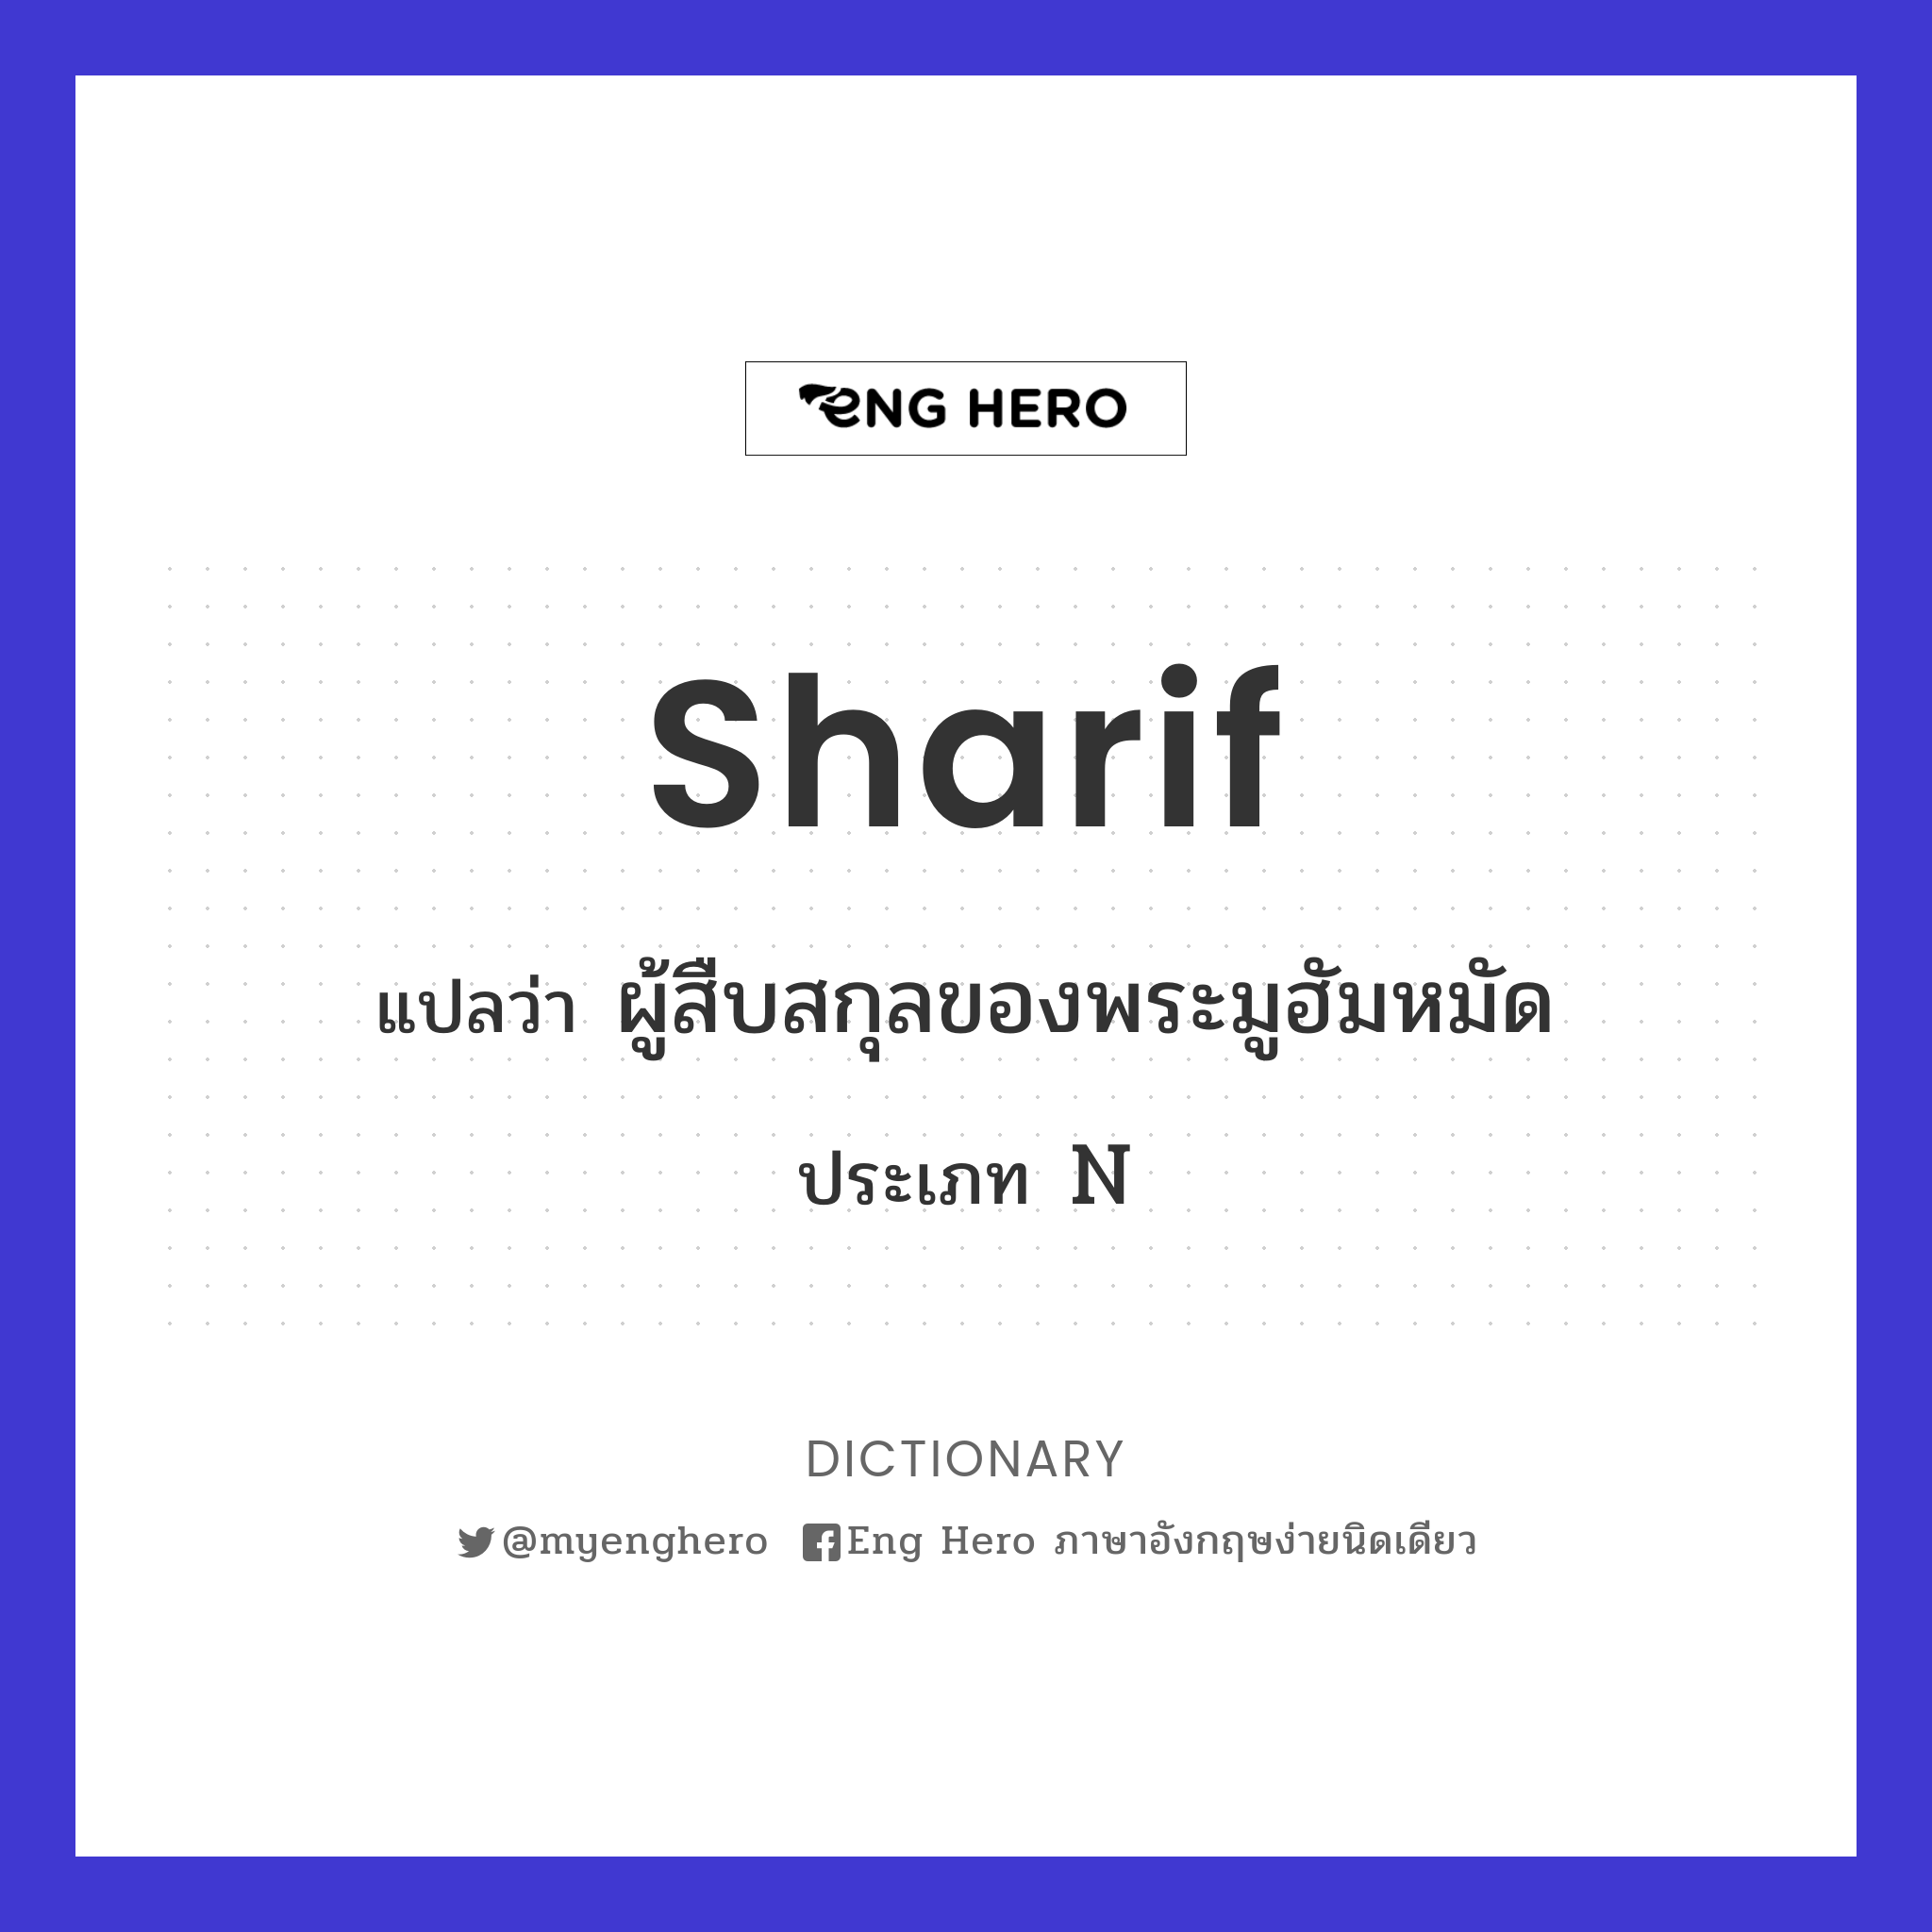 sharif